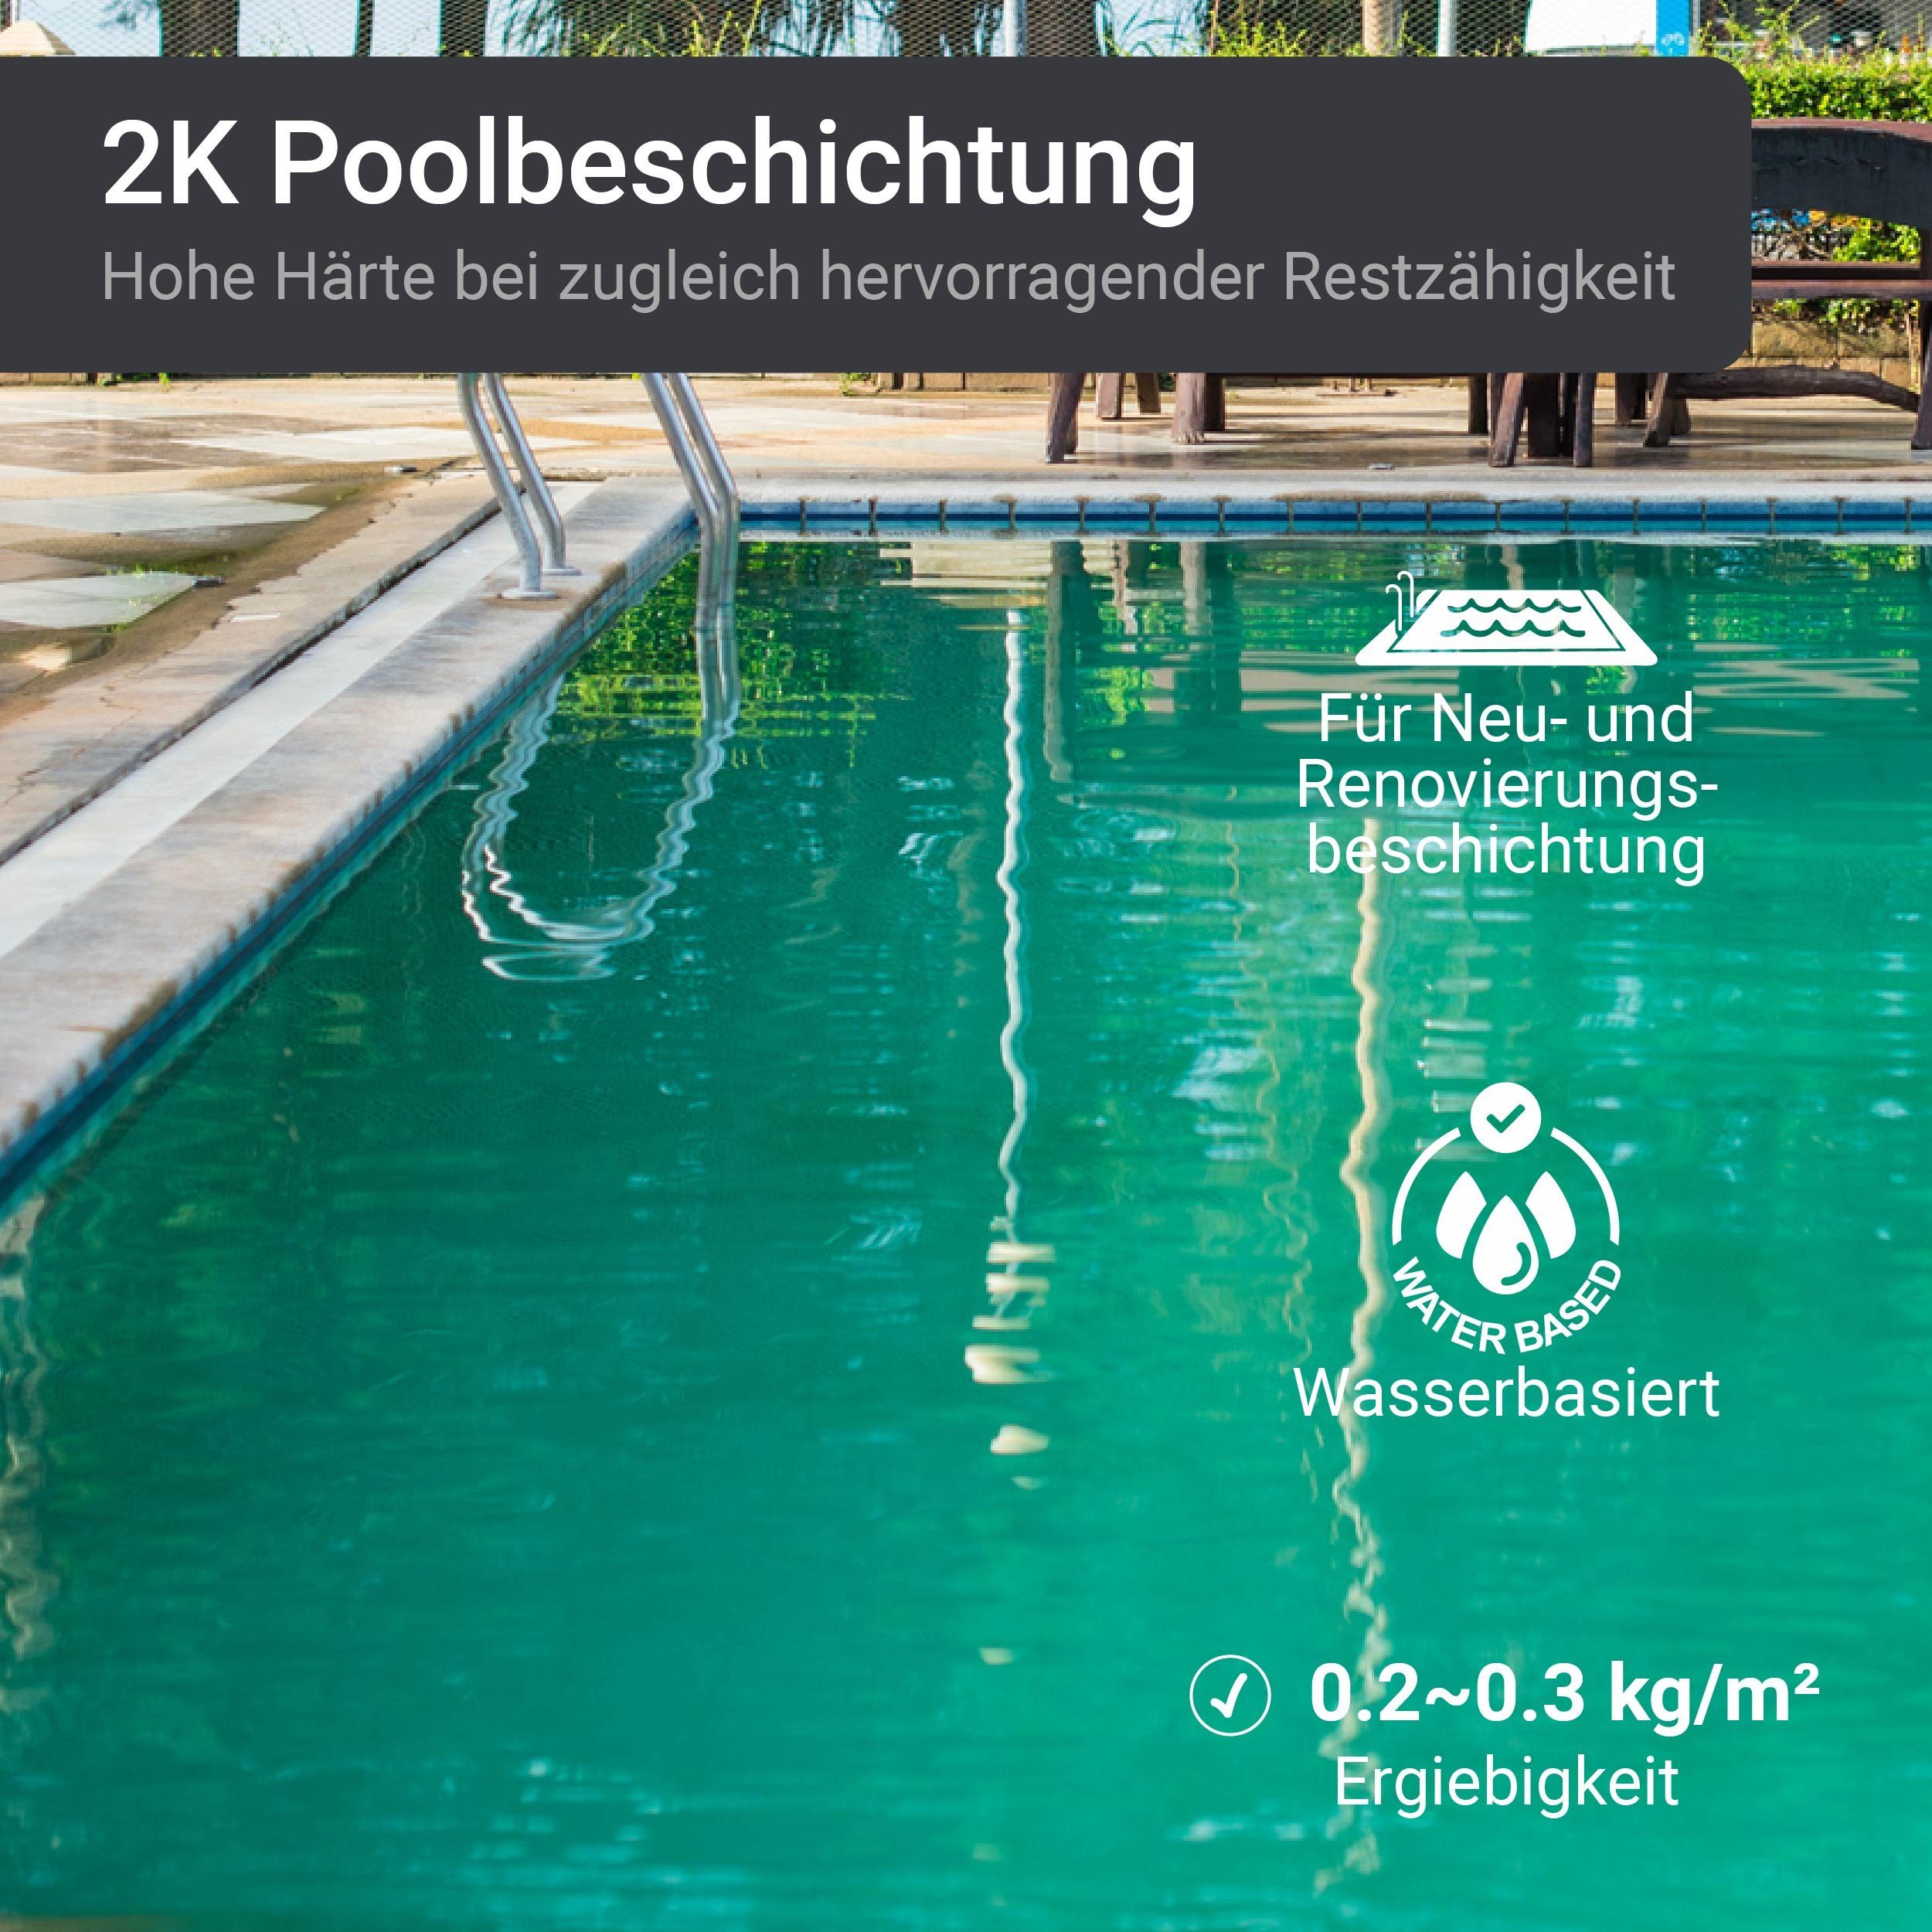 6005 Schwimmbadfarbe Moosgrün RAL Seidenglänzend, 2,5-20Kg, 2K Epoxidharz Lack SL450, Poolbeschichtung Poolfarbe WO-WE